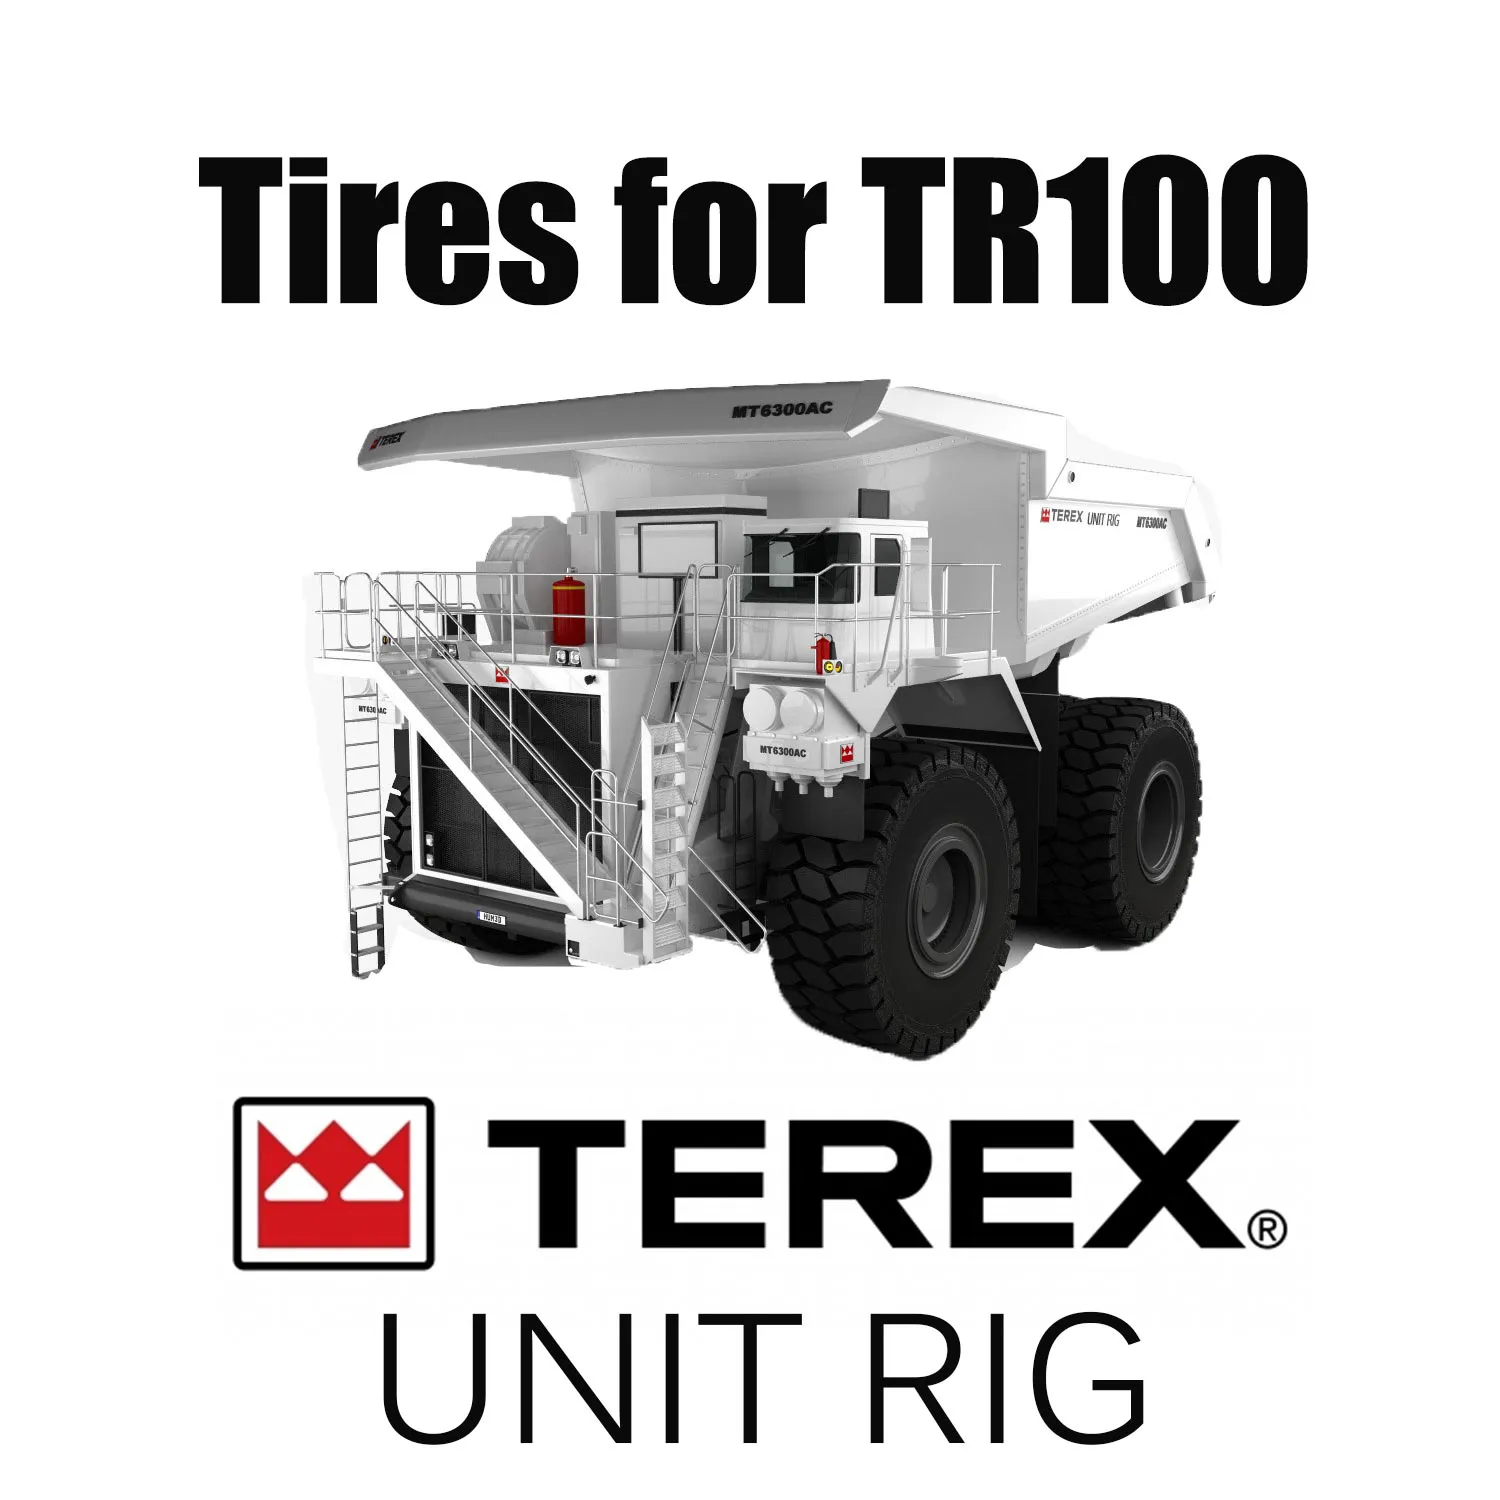 Wysokiej jakości opony do robót ziemnych 27.00R49 stosowane w wywrotkach TEREX TR100